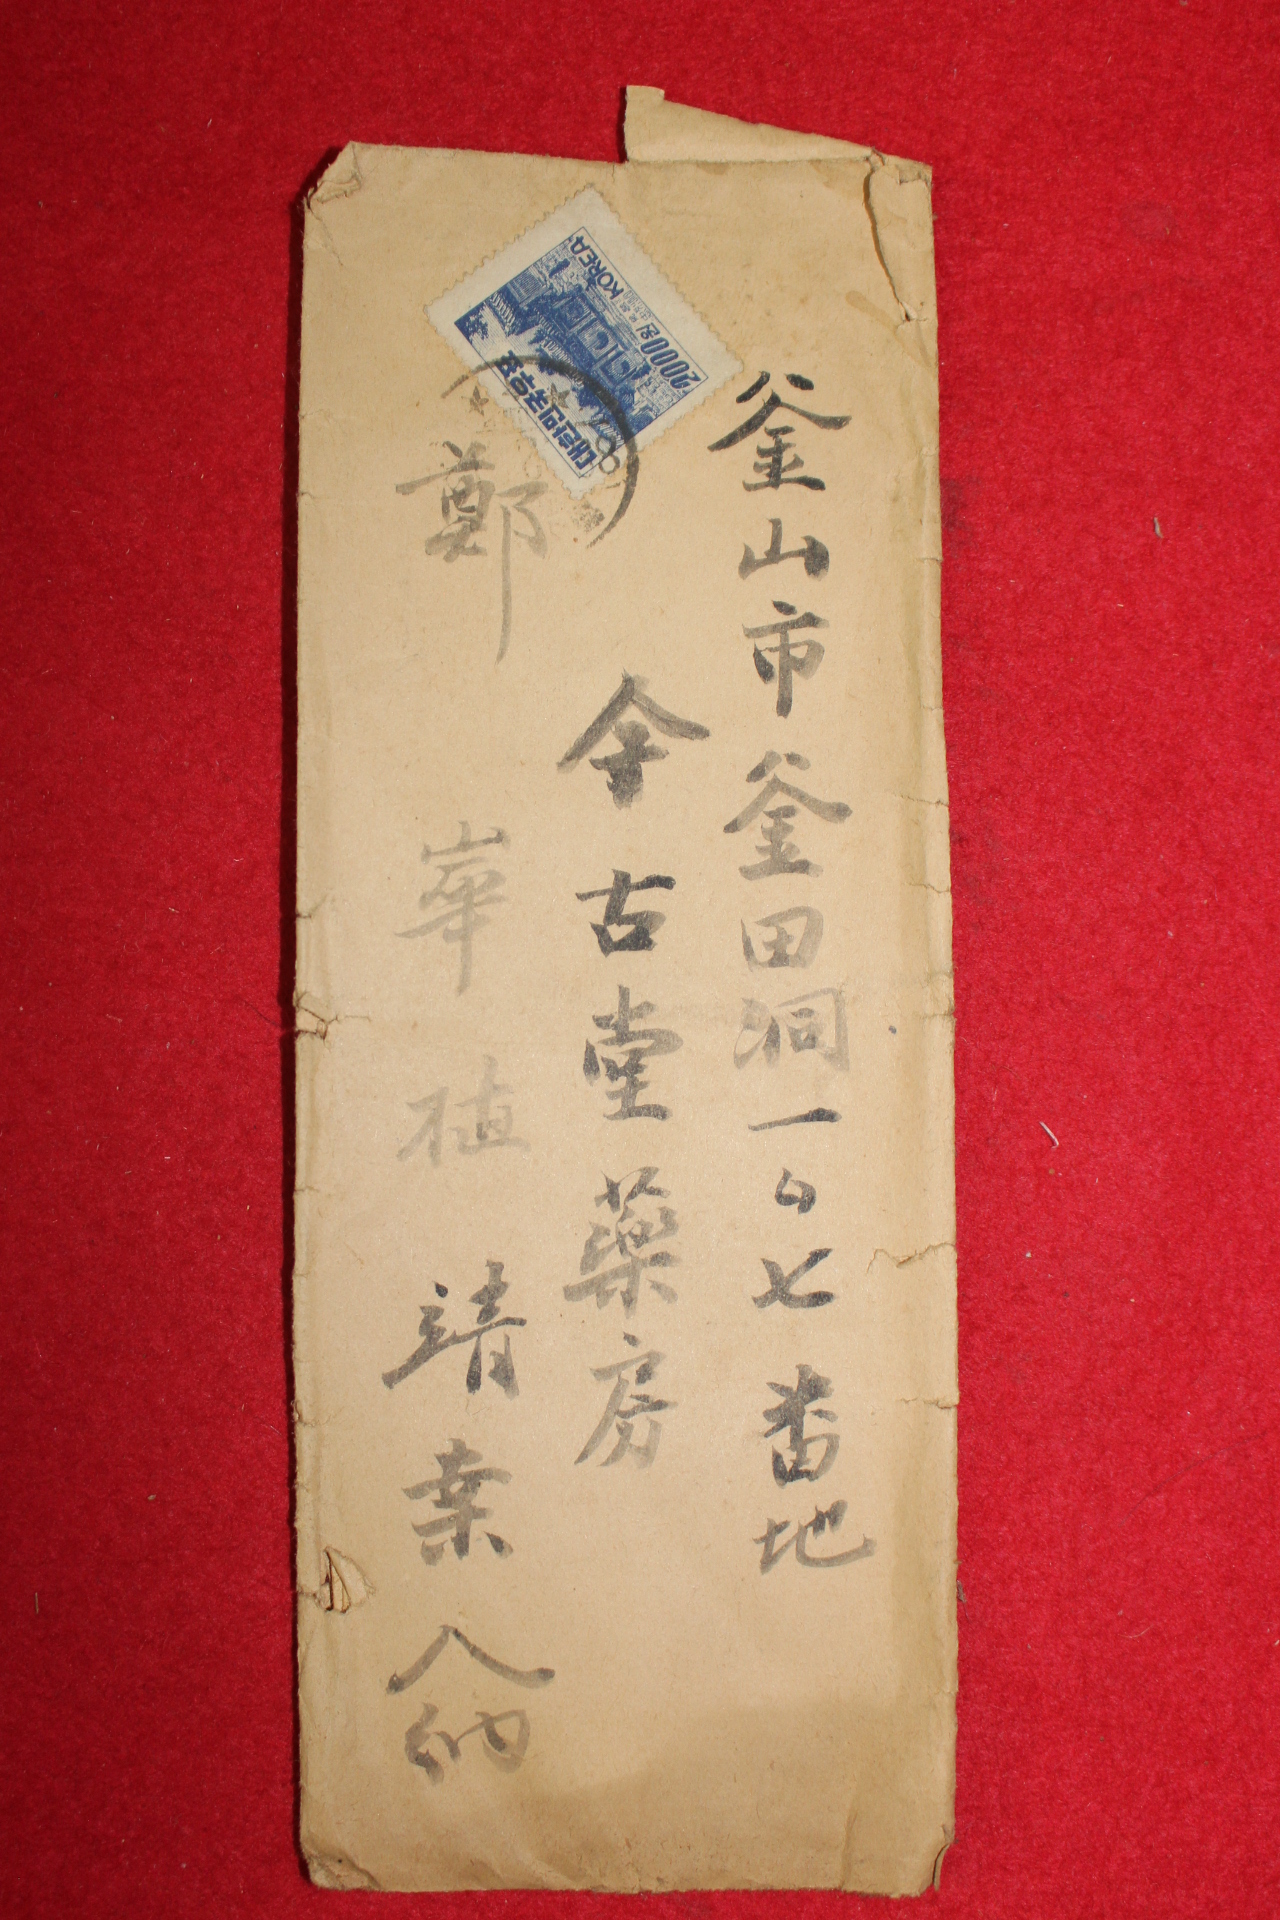 38-1955년(乙未) 장덕재(張德裁) 우편사용실체